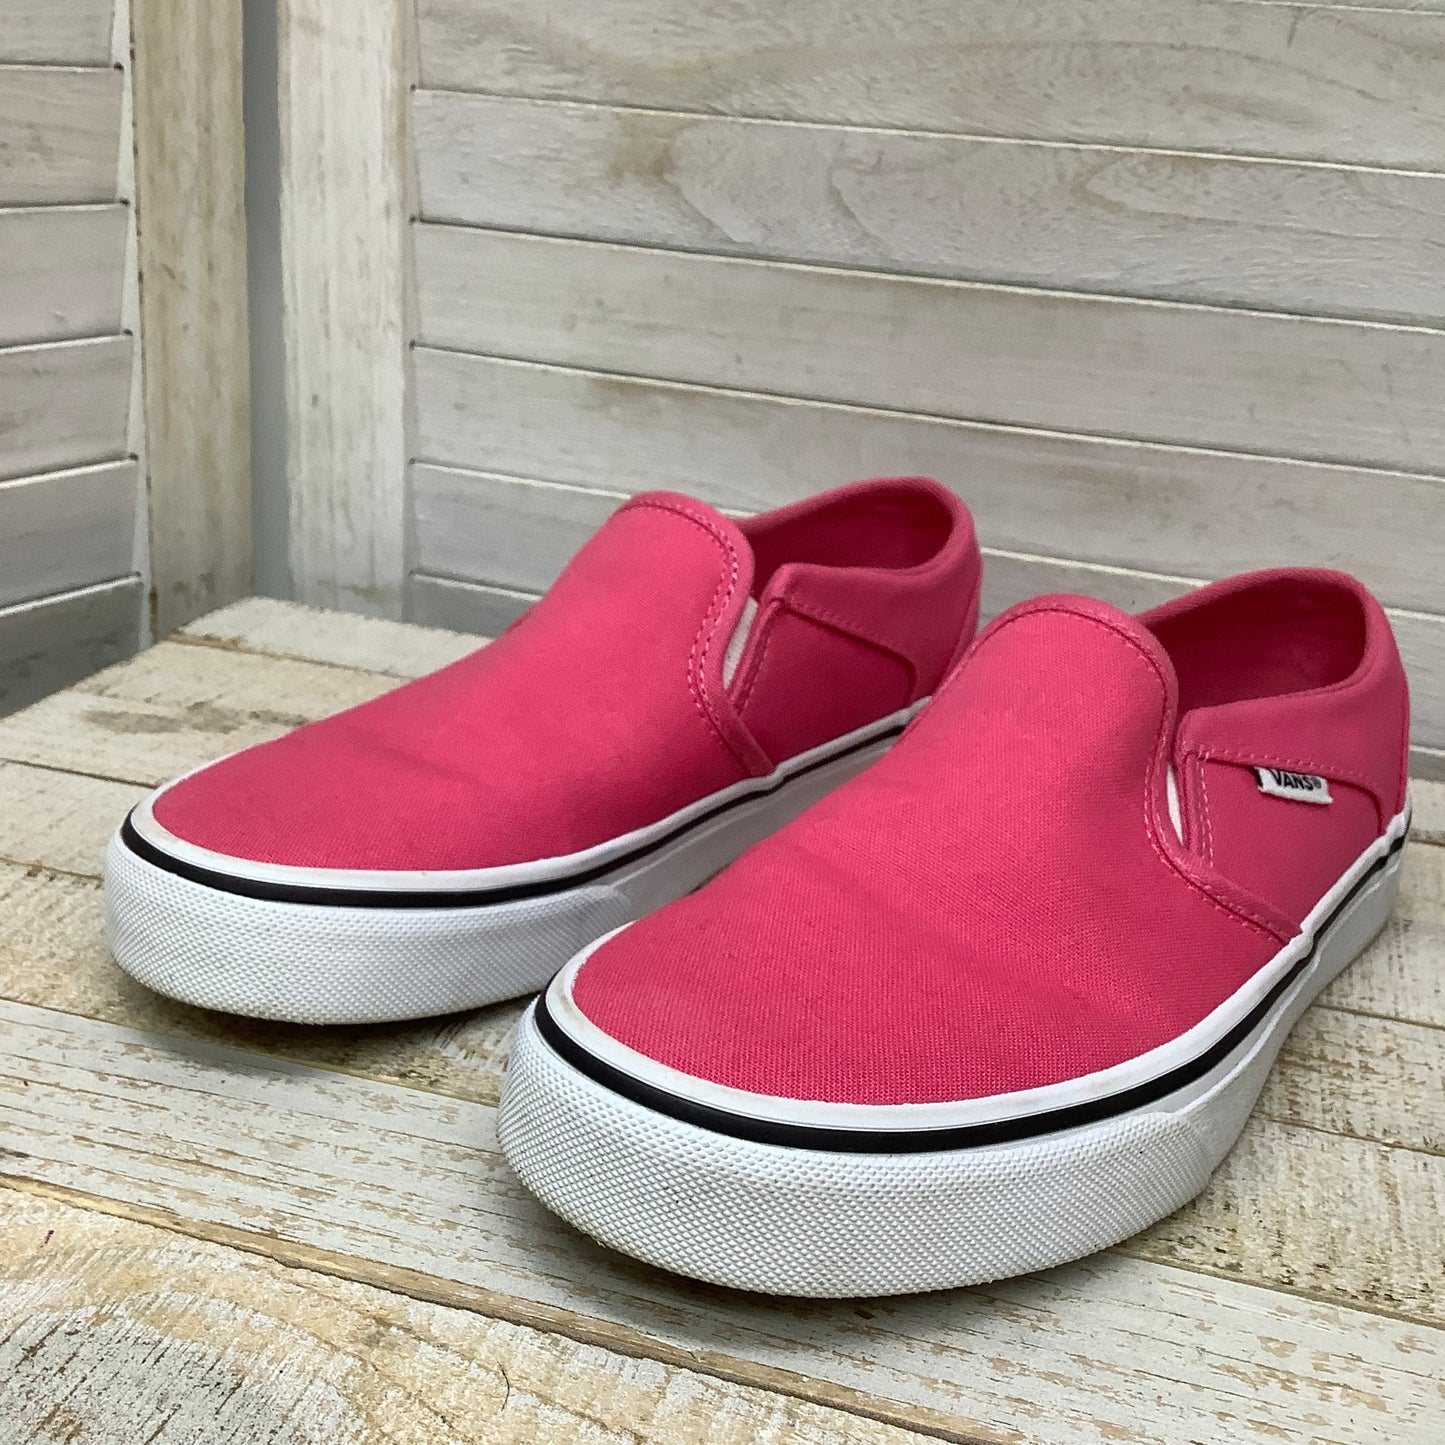 Pink Shoes Flats Vans, Size 7.5